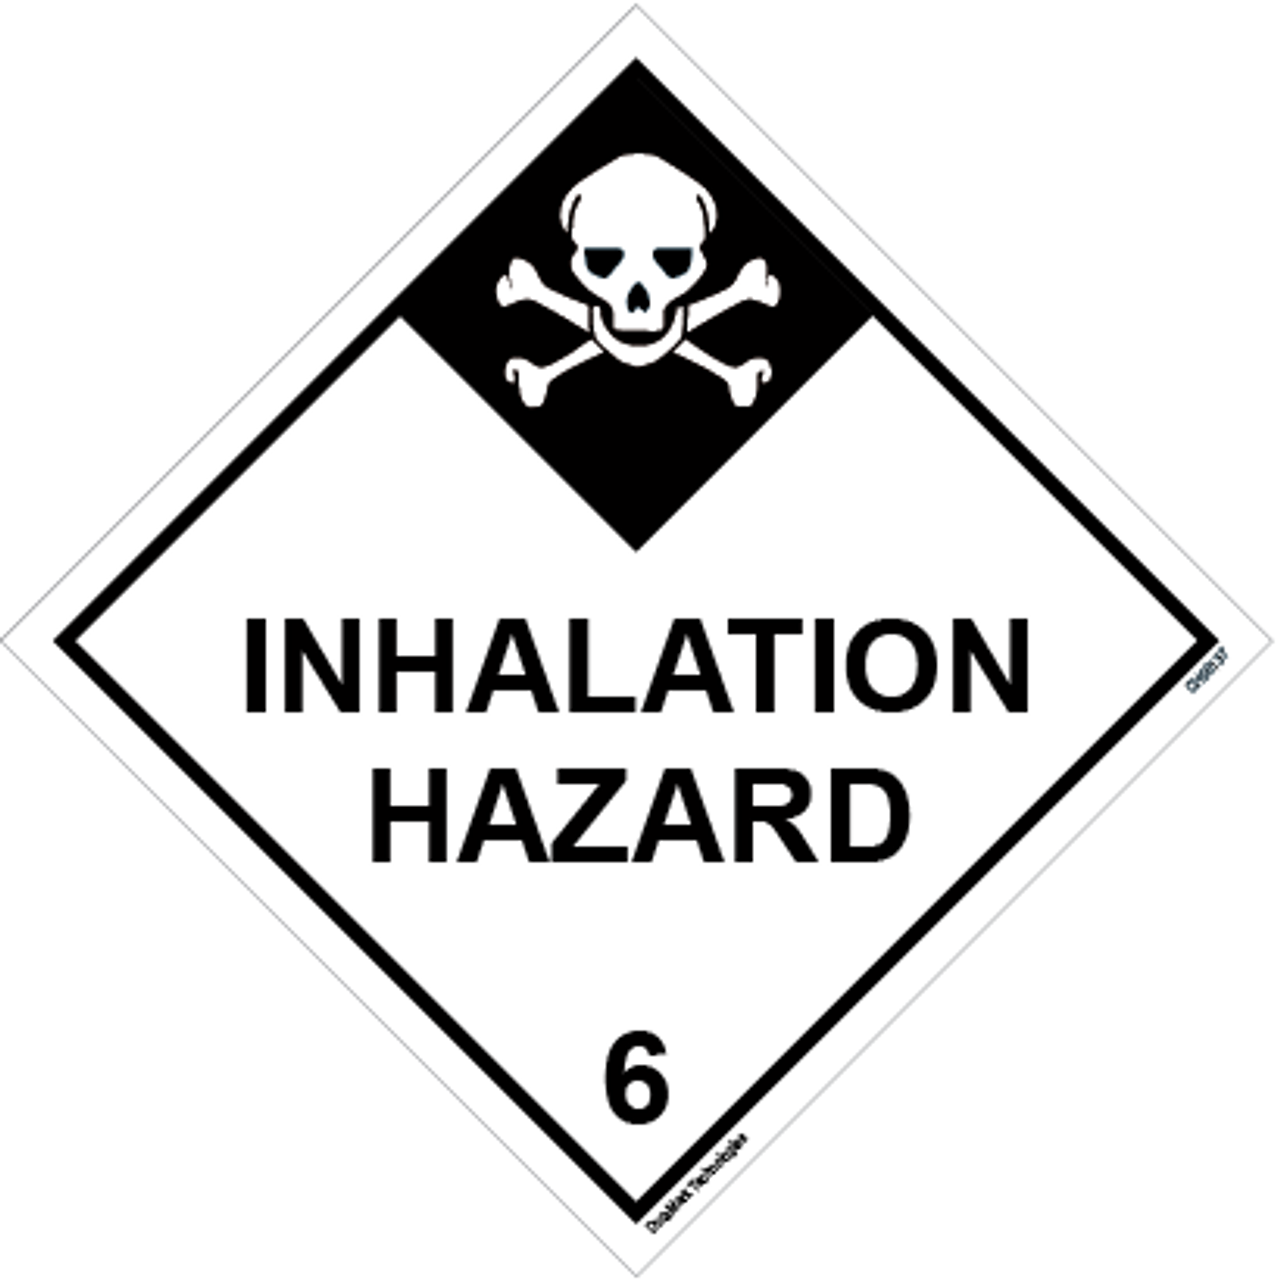 DOT Inhalation Hazard 6 Hazardous Loads Label